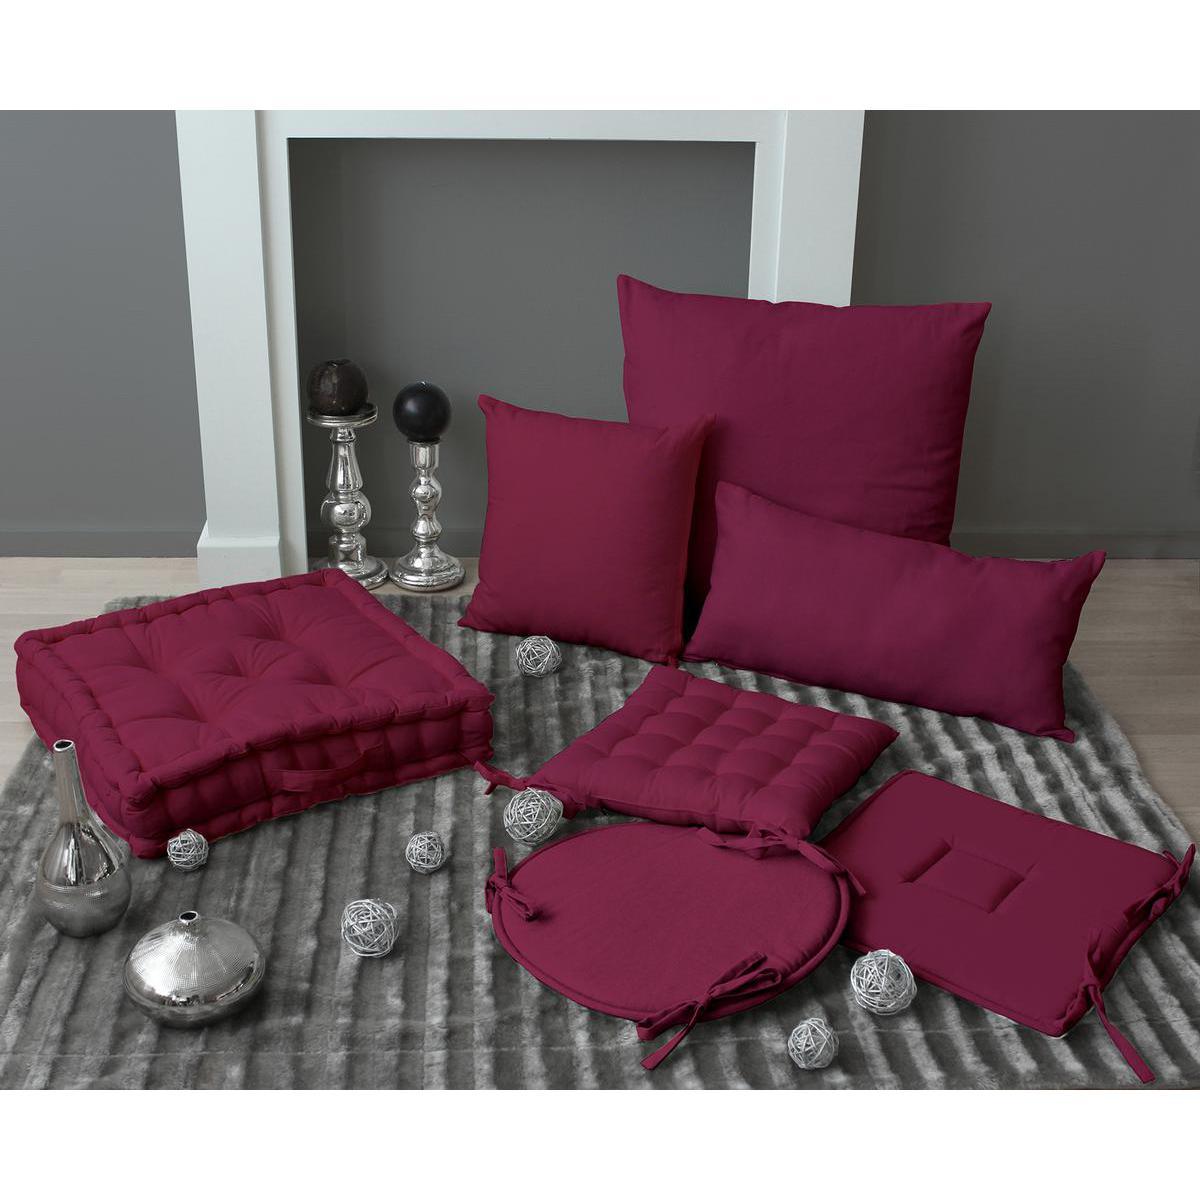 Galette de chaise - 100% coton - 40 x 40 cm - Violet